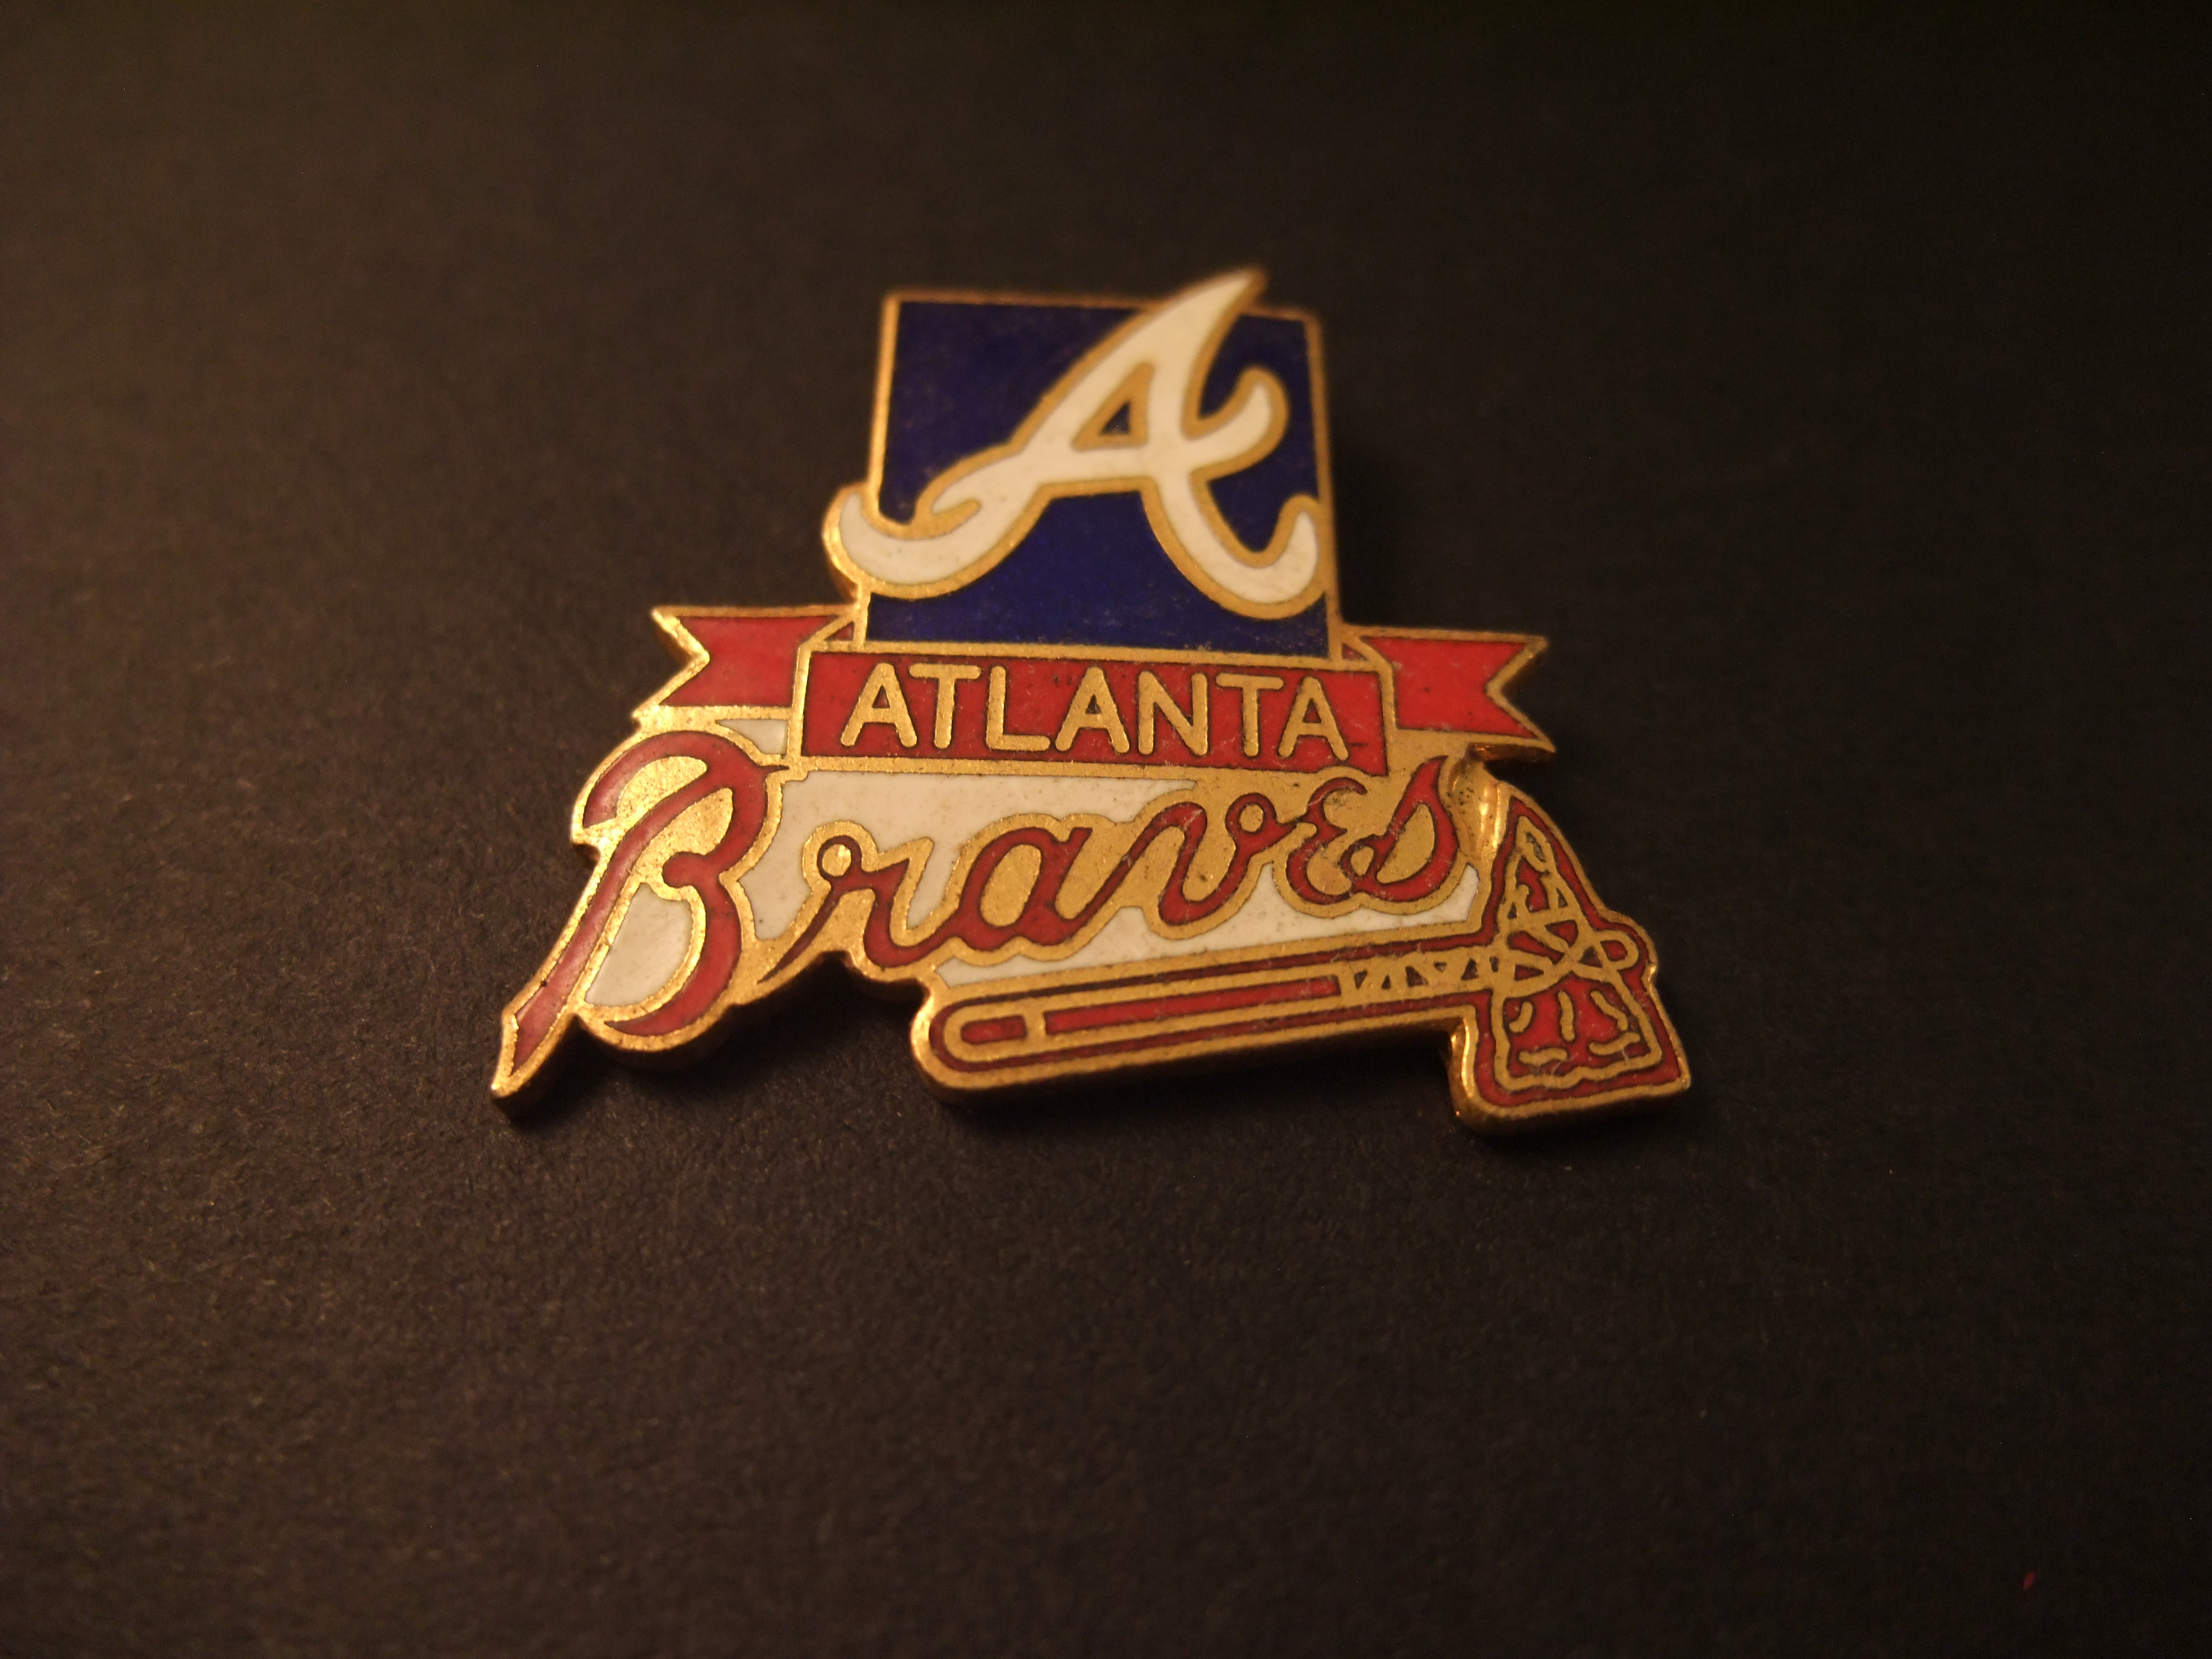 The Atlanta Braves baseballteam